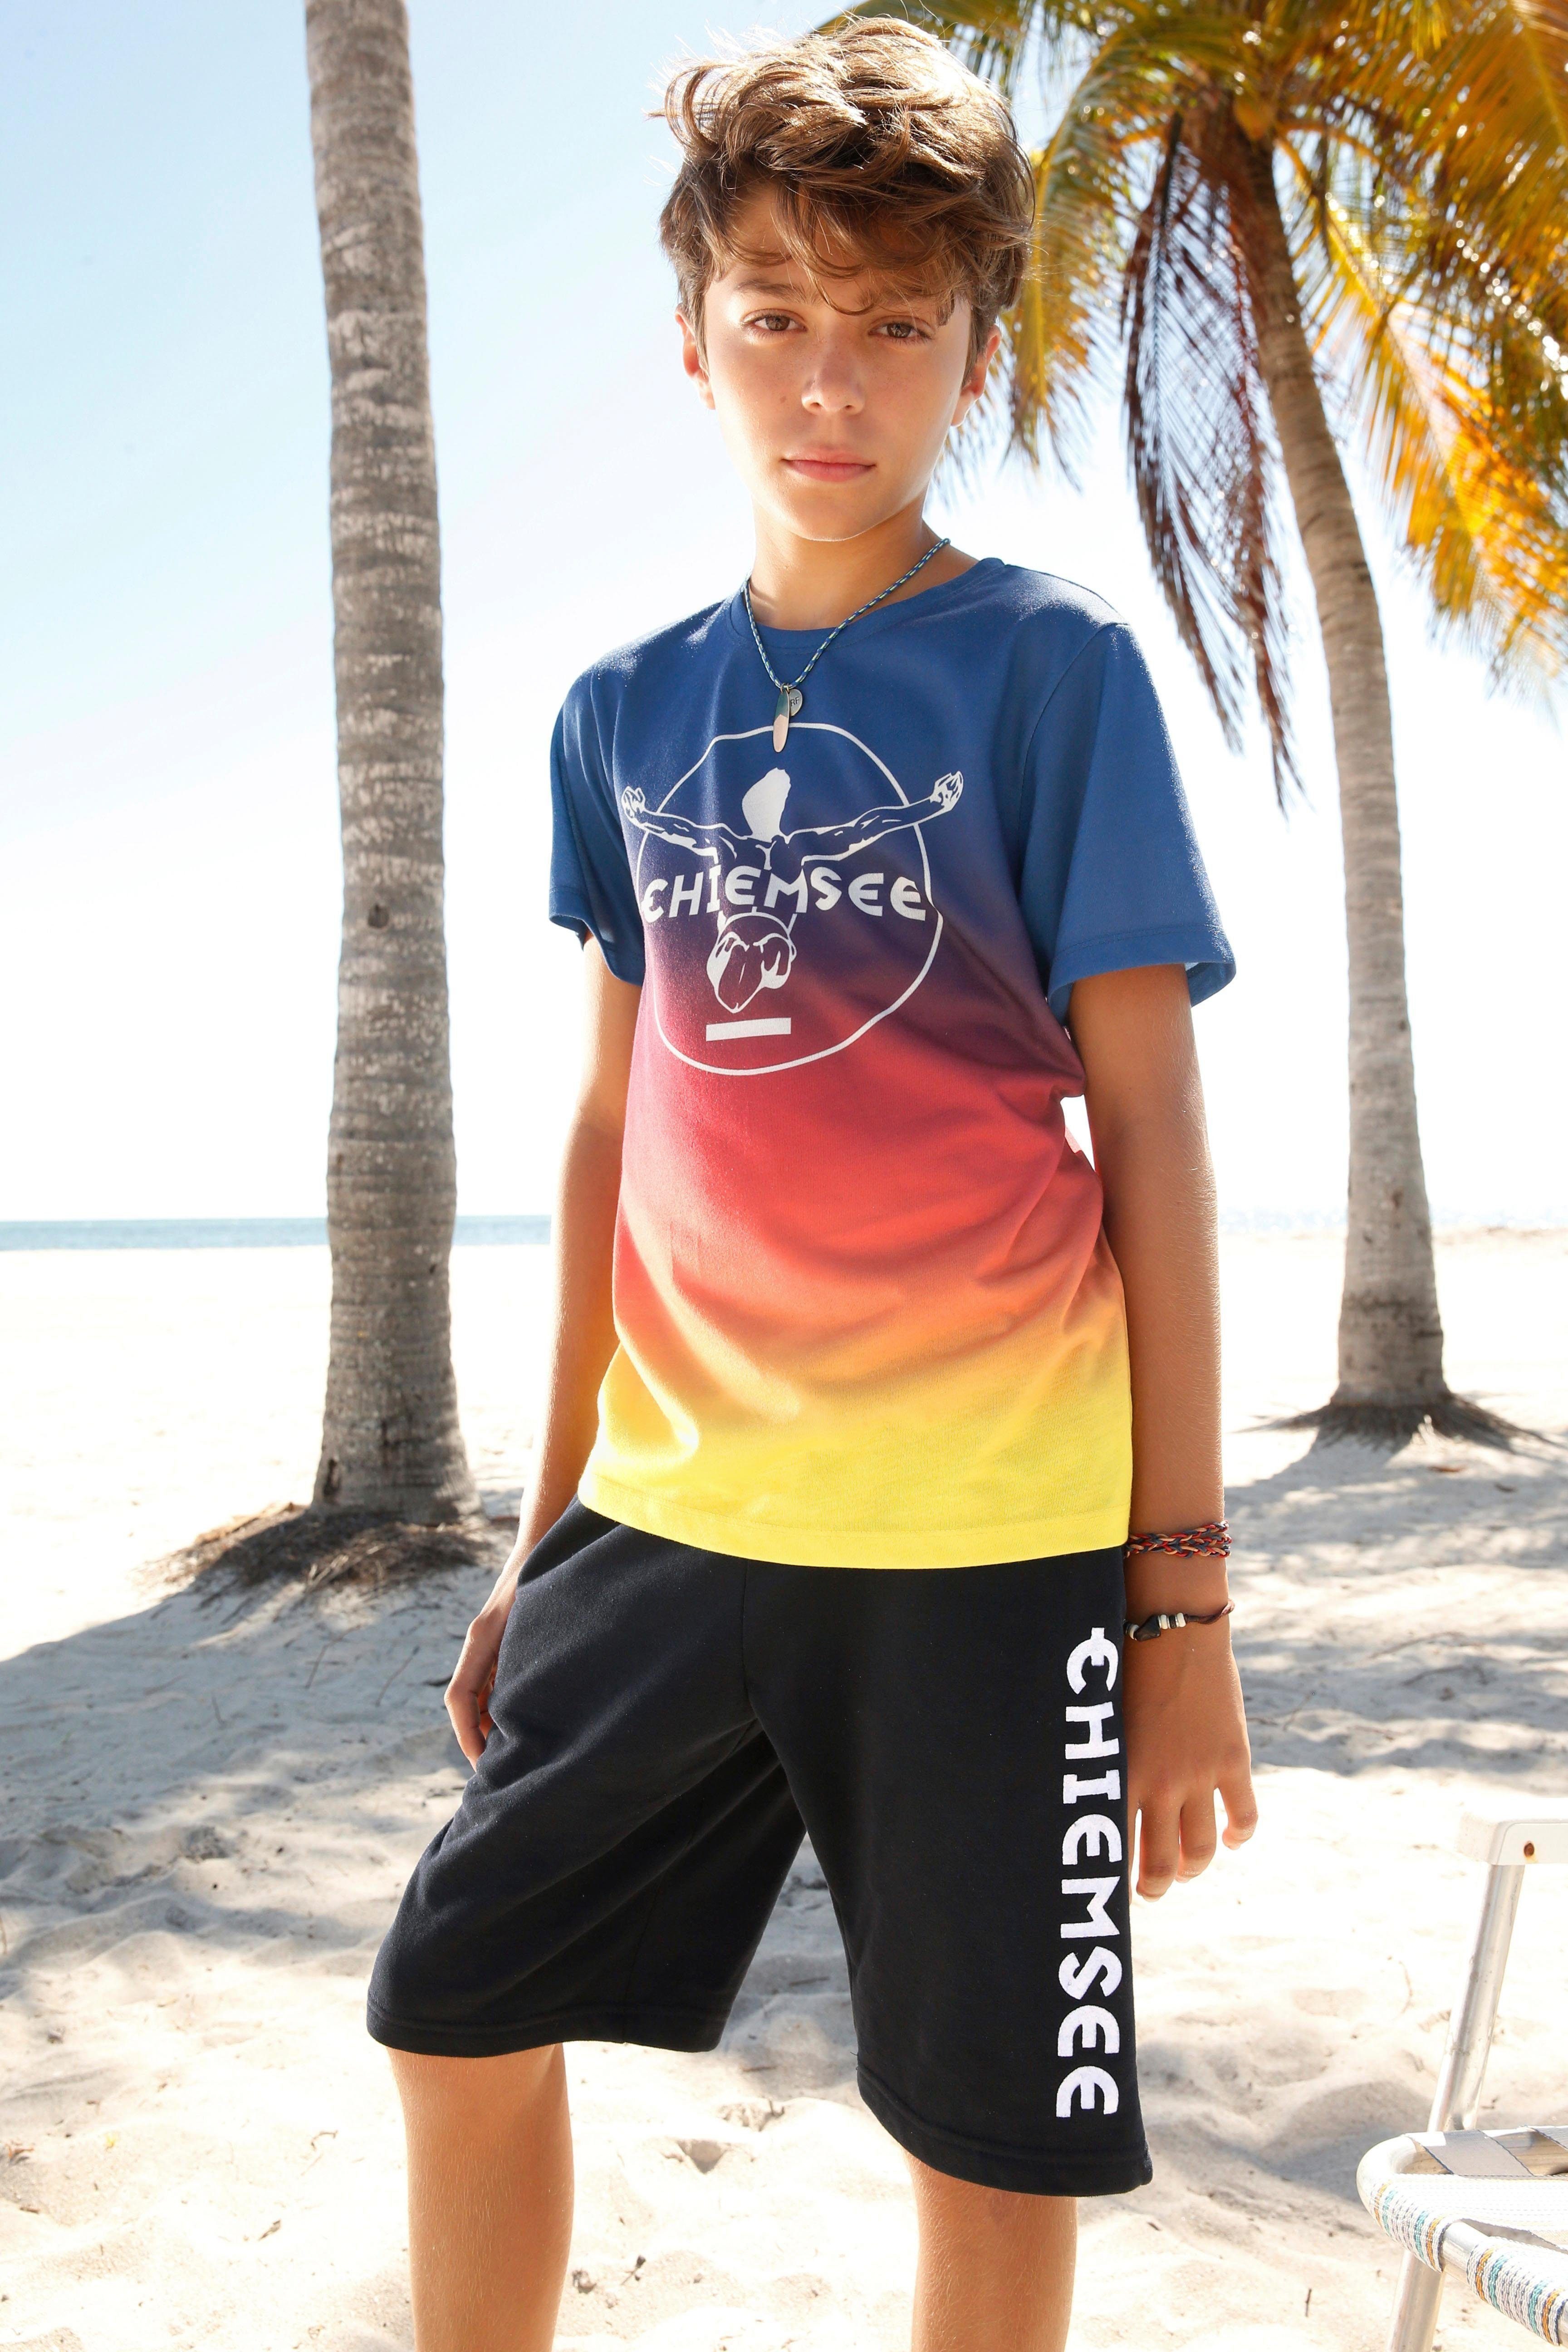 Chiemsee T-Shirt im Farbverlauf mit Druck vorn